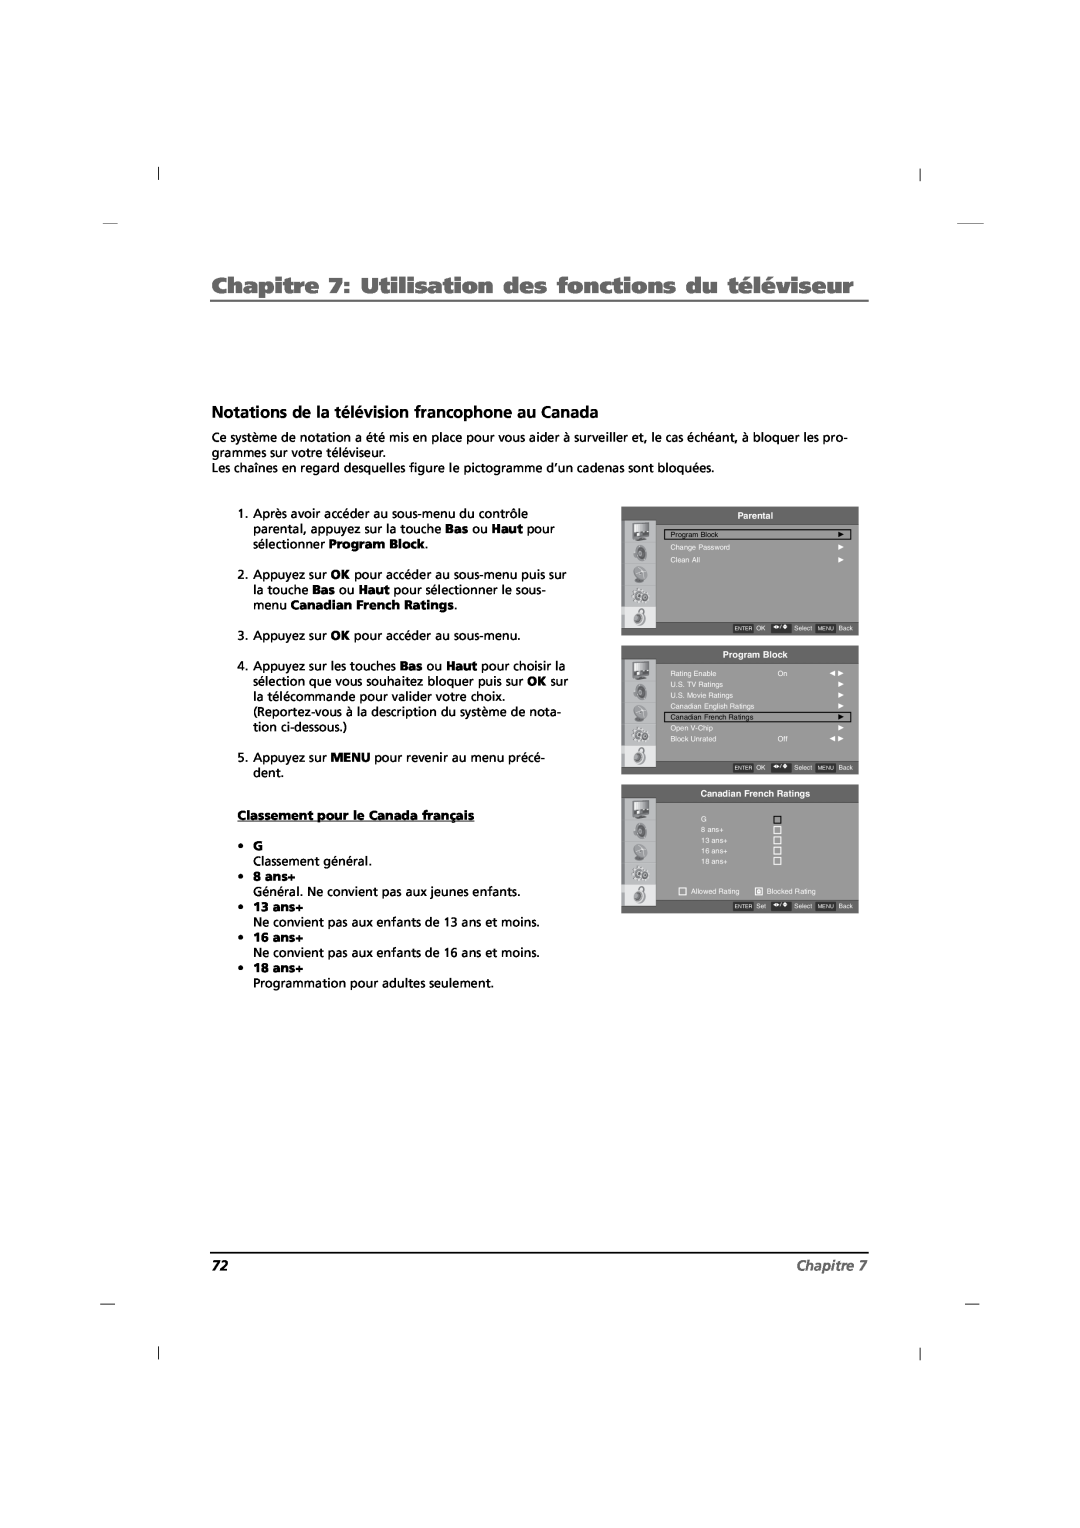 RCA J26CE820 manual Notations de la télévision francophone au Canada, Chapitre 7 Utilisation des fonctions du téléviseur 